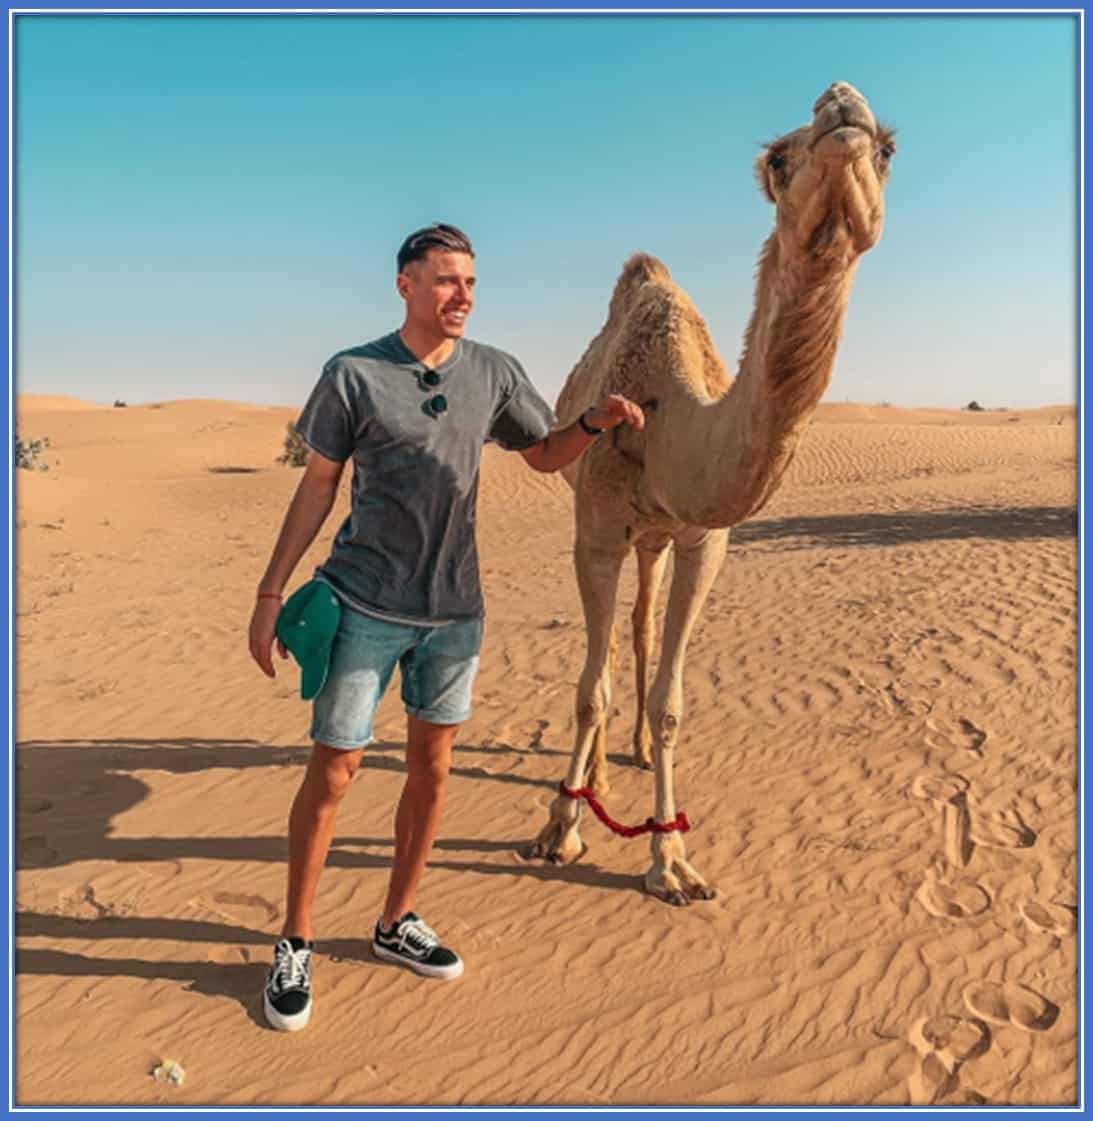 Jan Bednarek Lifestyle - he loves taking desert holidays.